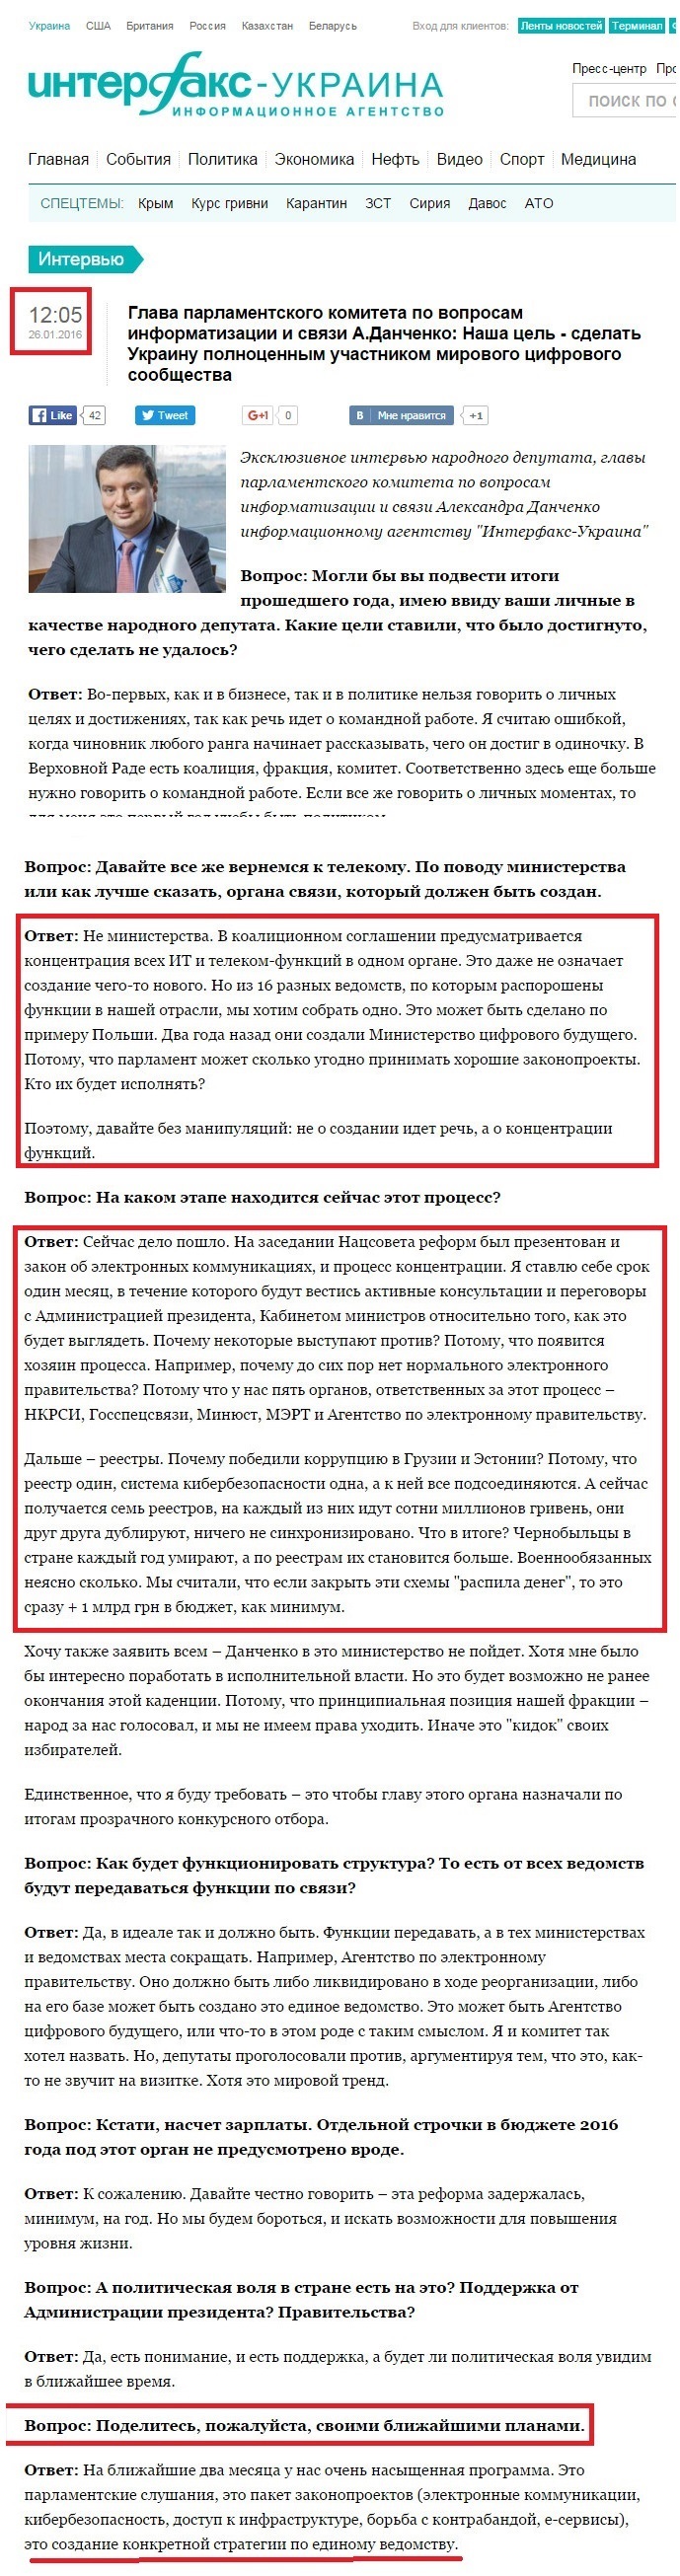 http://interfax.com.ua/news/interview/320021.html